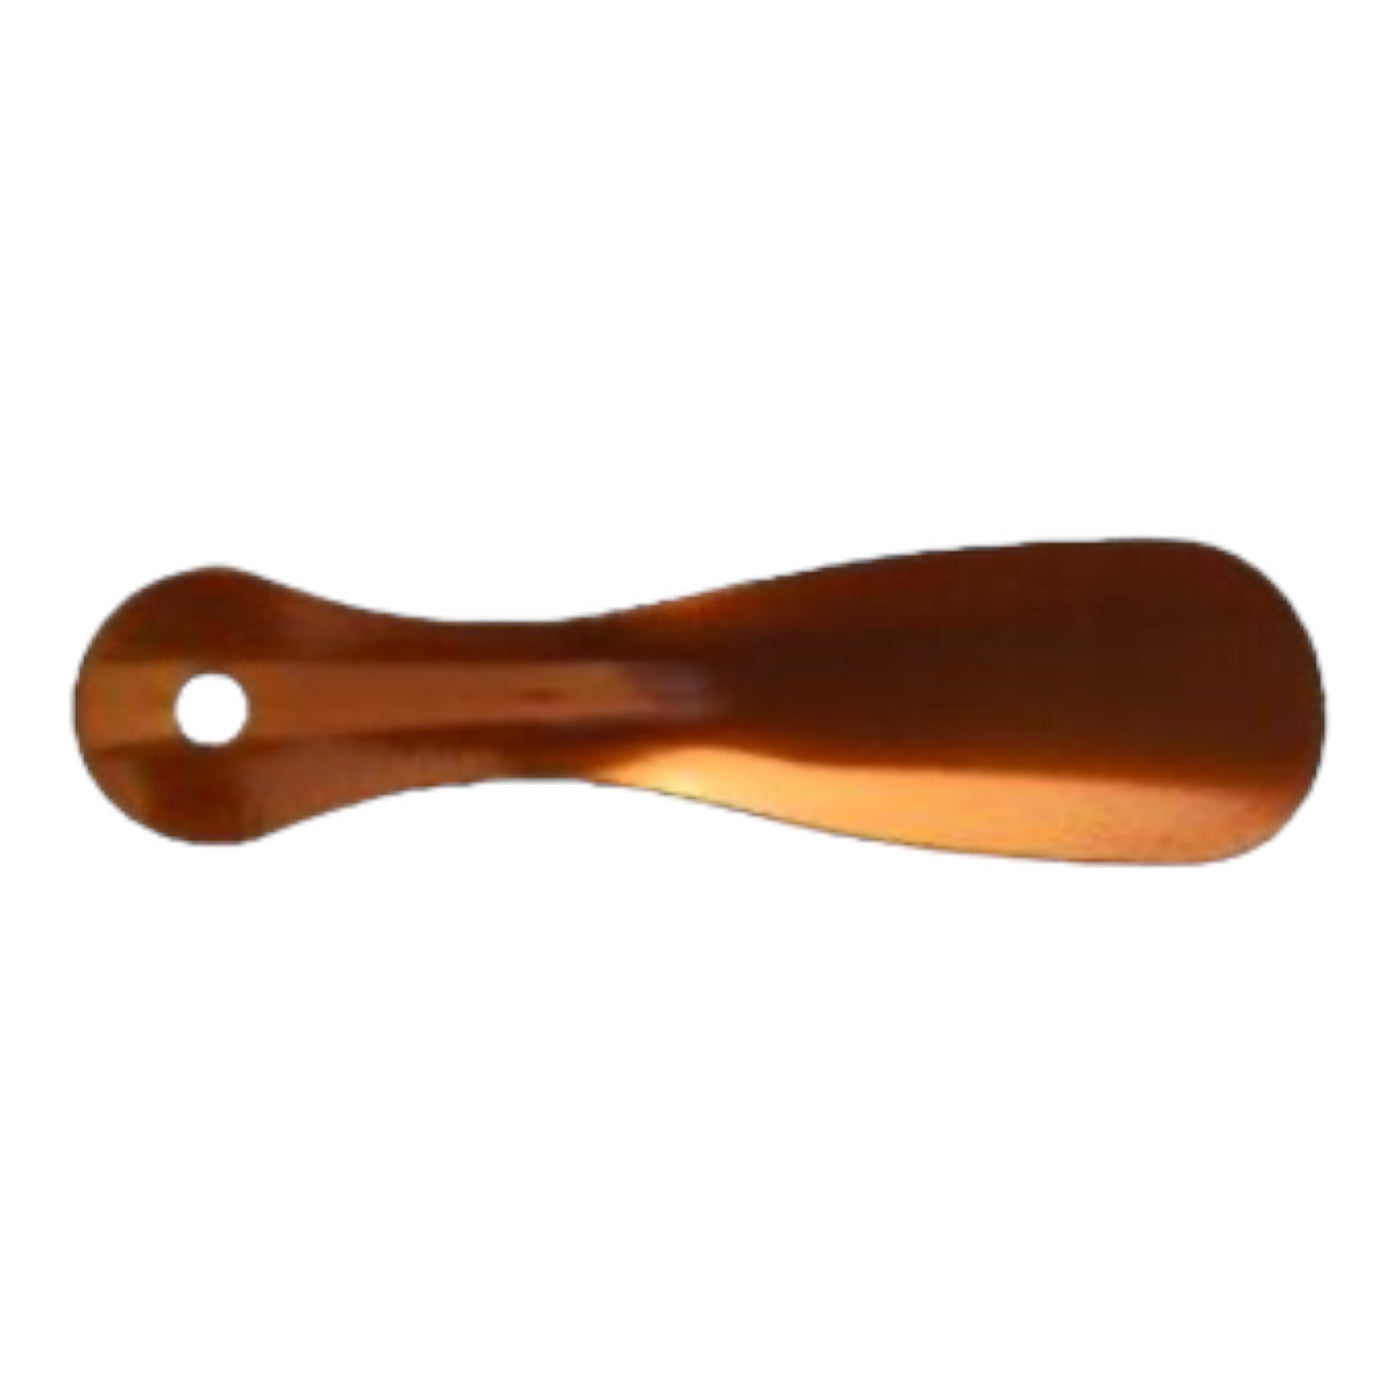 Shoe Horn - Brushed Copper